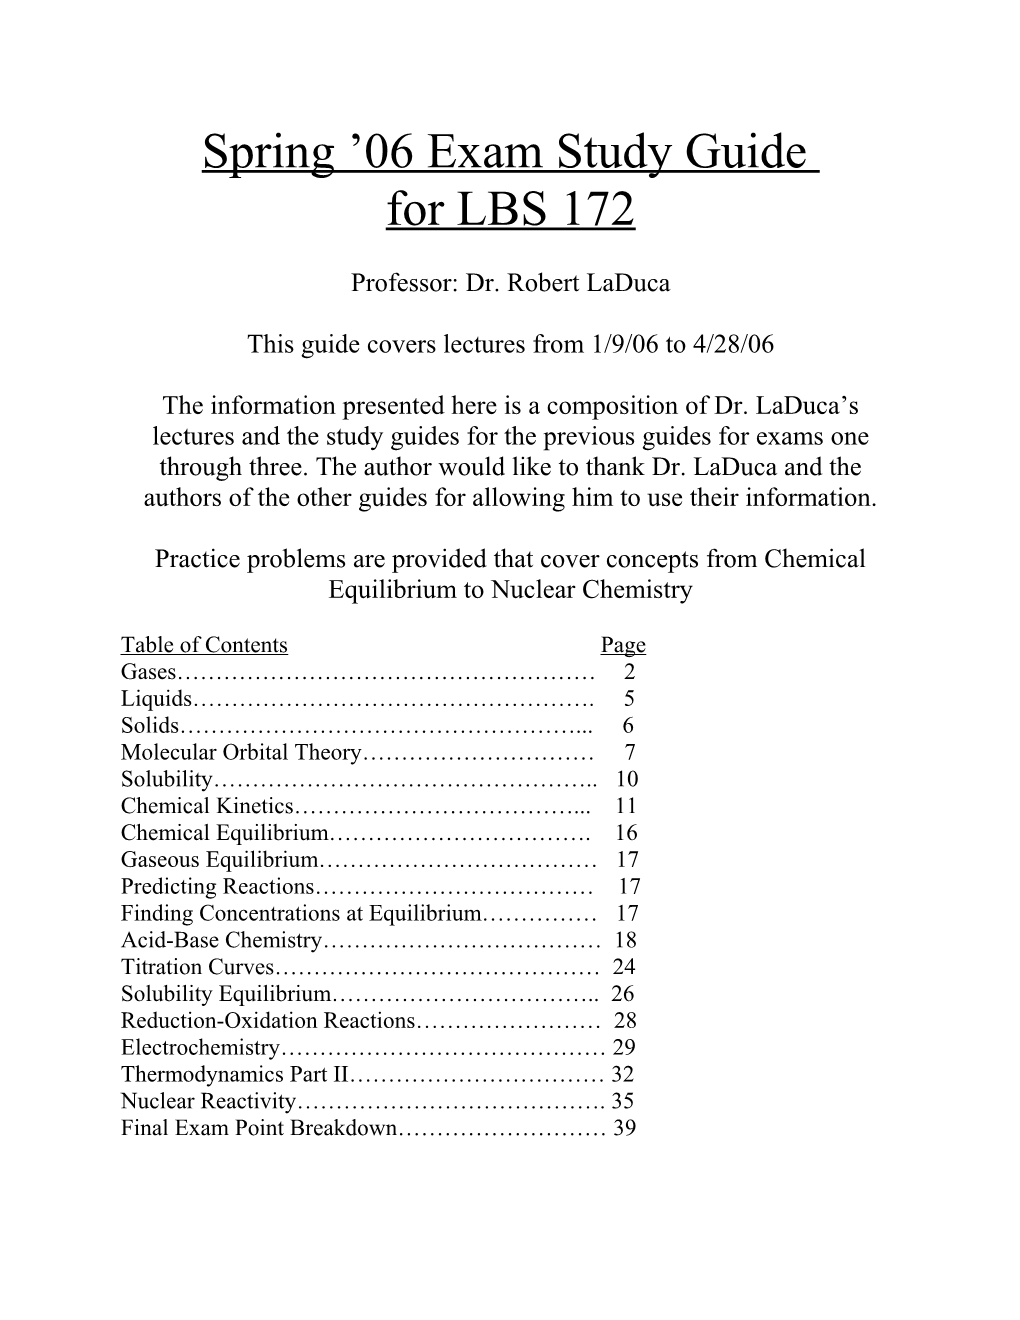 Spring 06 Exam Study Guide